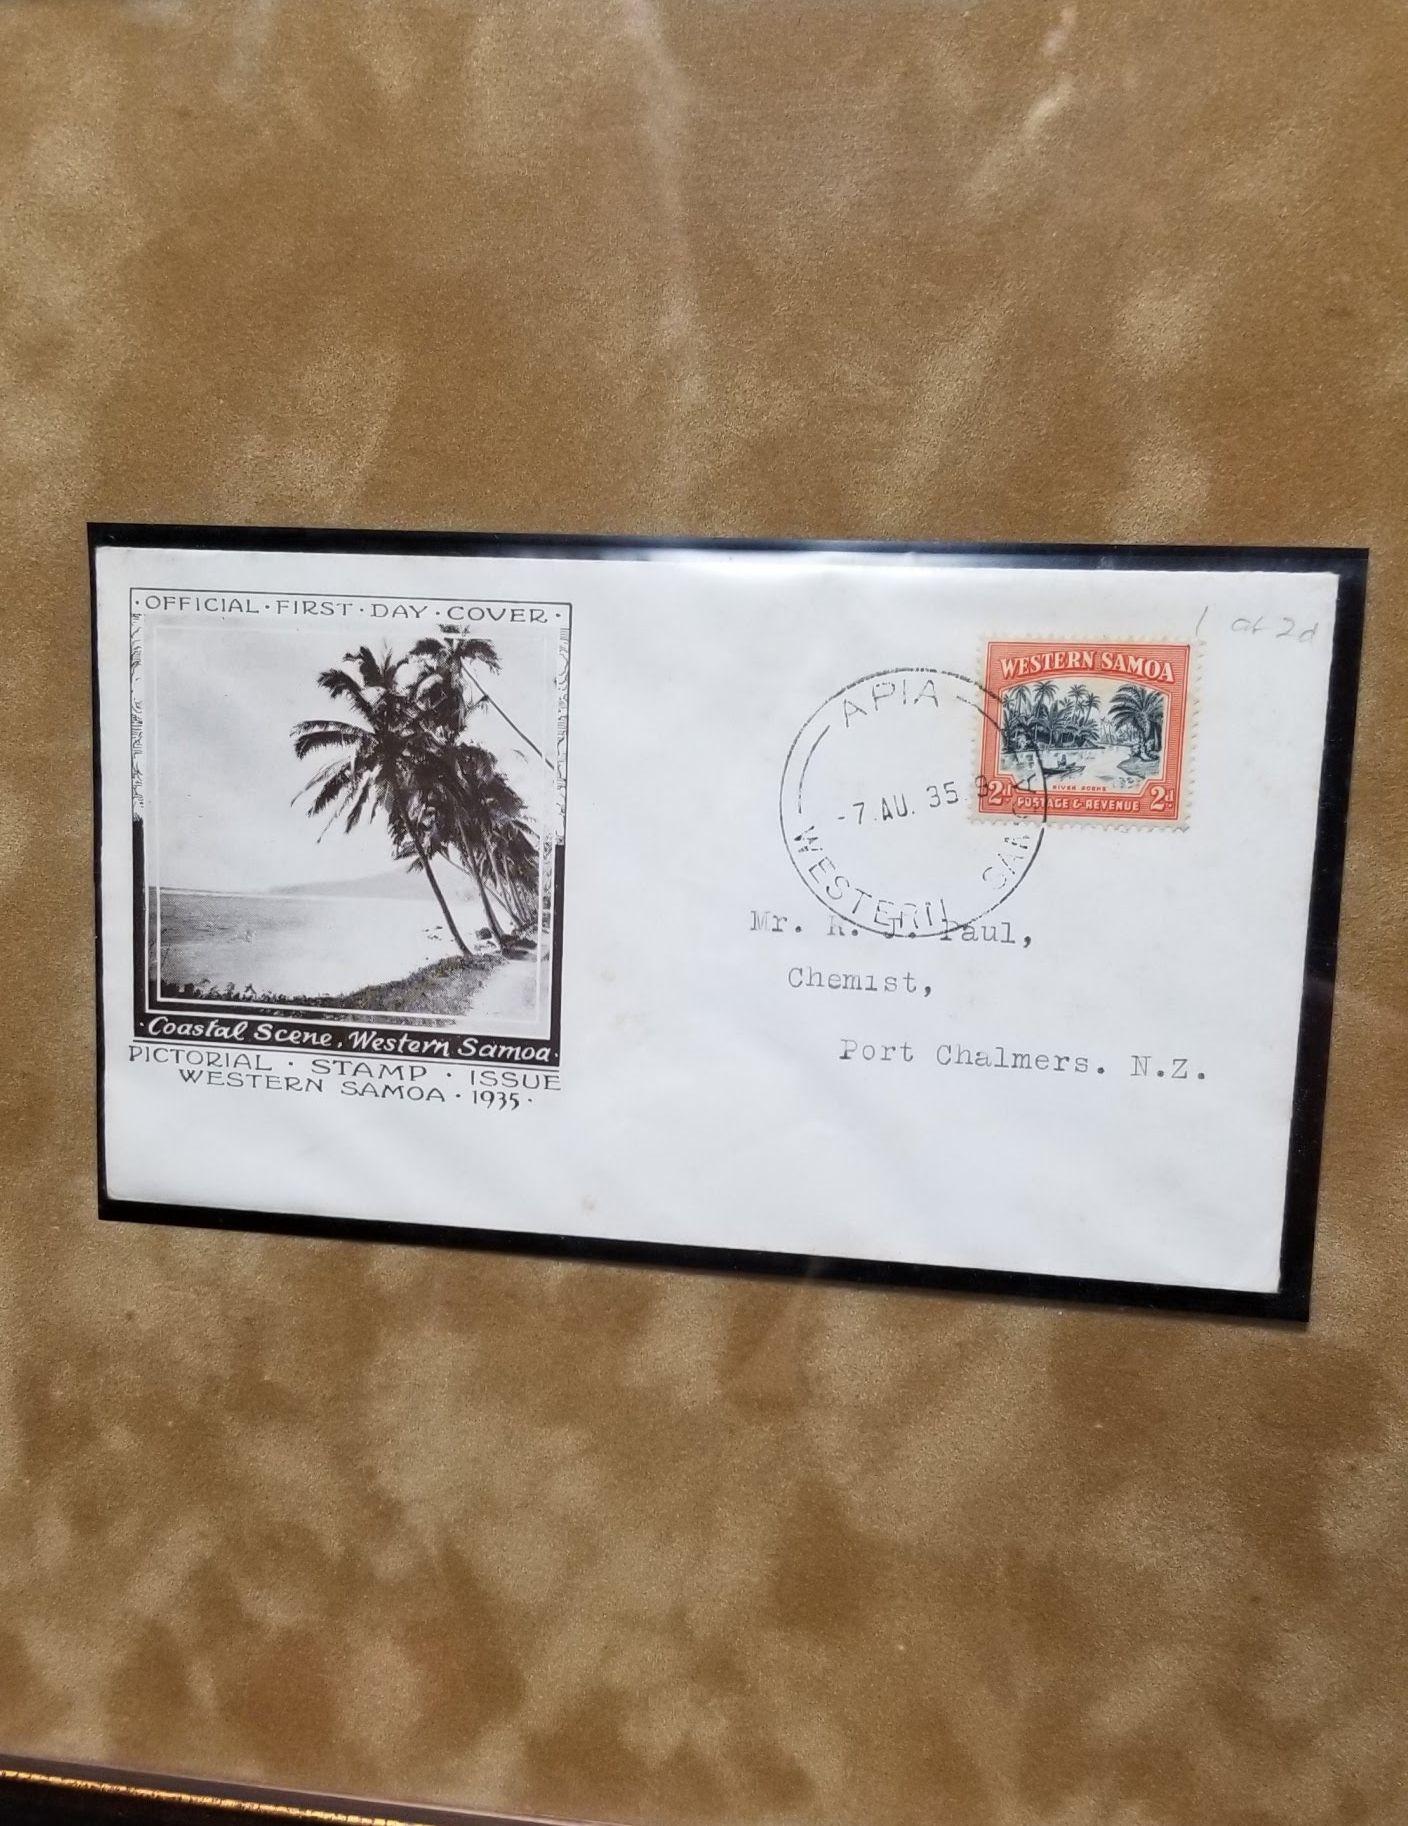 Erwecken Sie die Faszination der Samoanischen Inseln mit diesem charmanten gerahmten Postkartenset. Mit nostalgischen Bildern, die die Essenz der samoanischen Kultur und Landschaften einfangen, verleiht diese Kollektion jedem Raum einen Hauch von